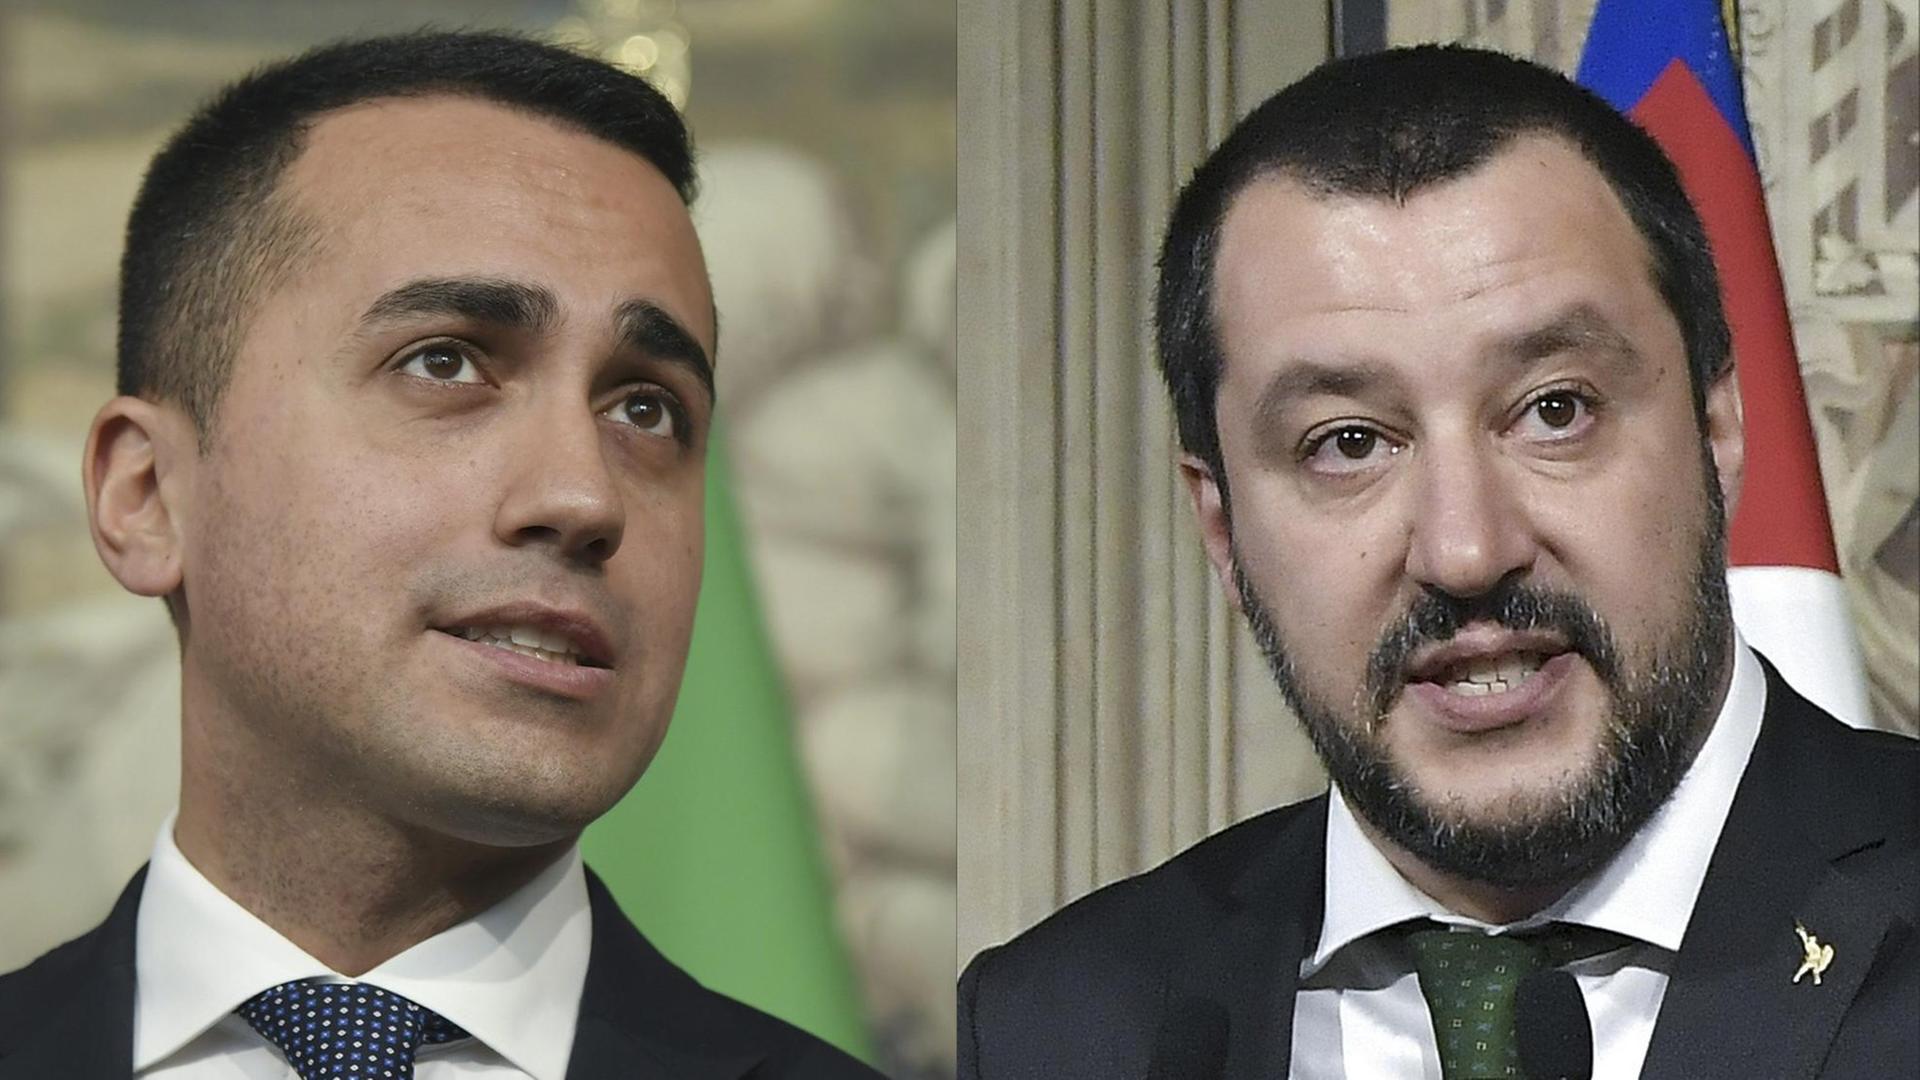 Die Fotomontage zeigt Luigi di Maio, Parteichef der Fünf-Sterne-Bewegung und Matteo Salvini, den Vorsitzenden der rechtspopulistischen Partei Lega.